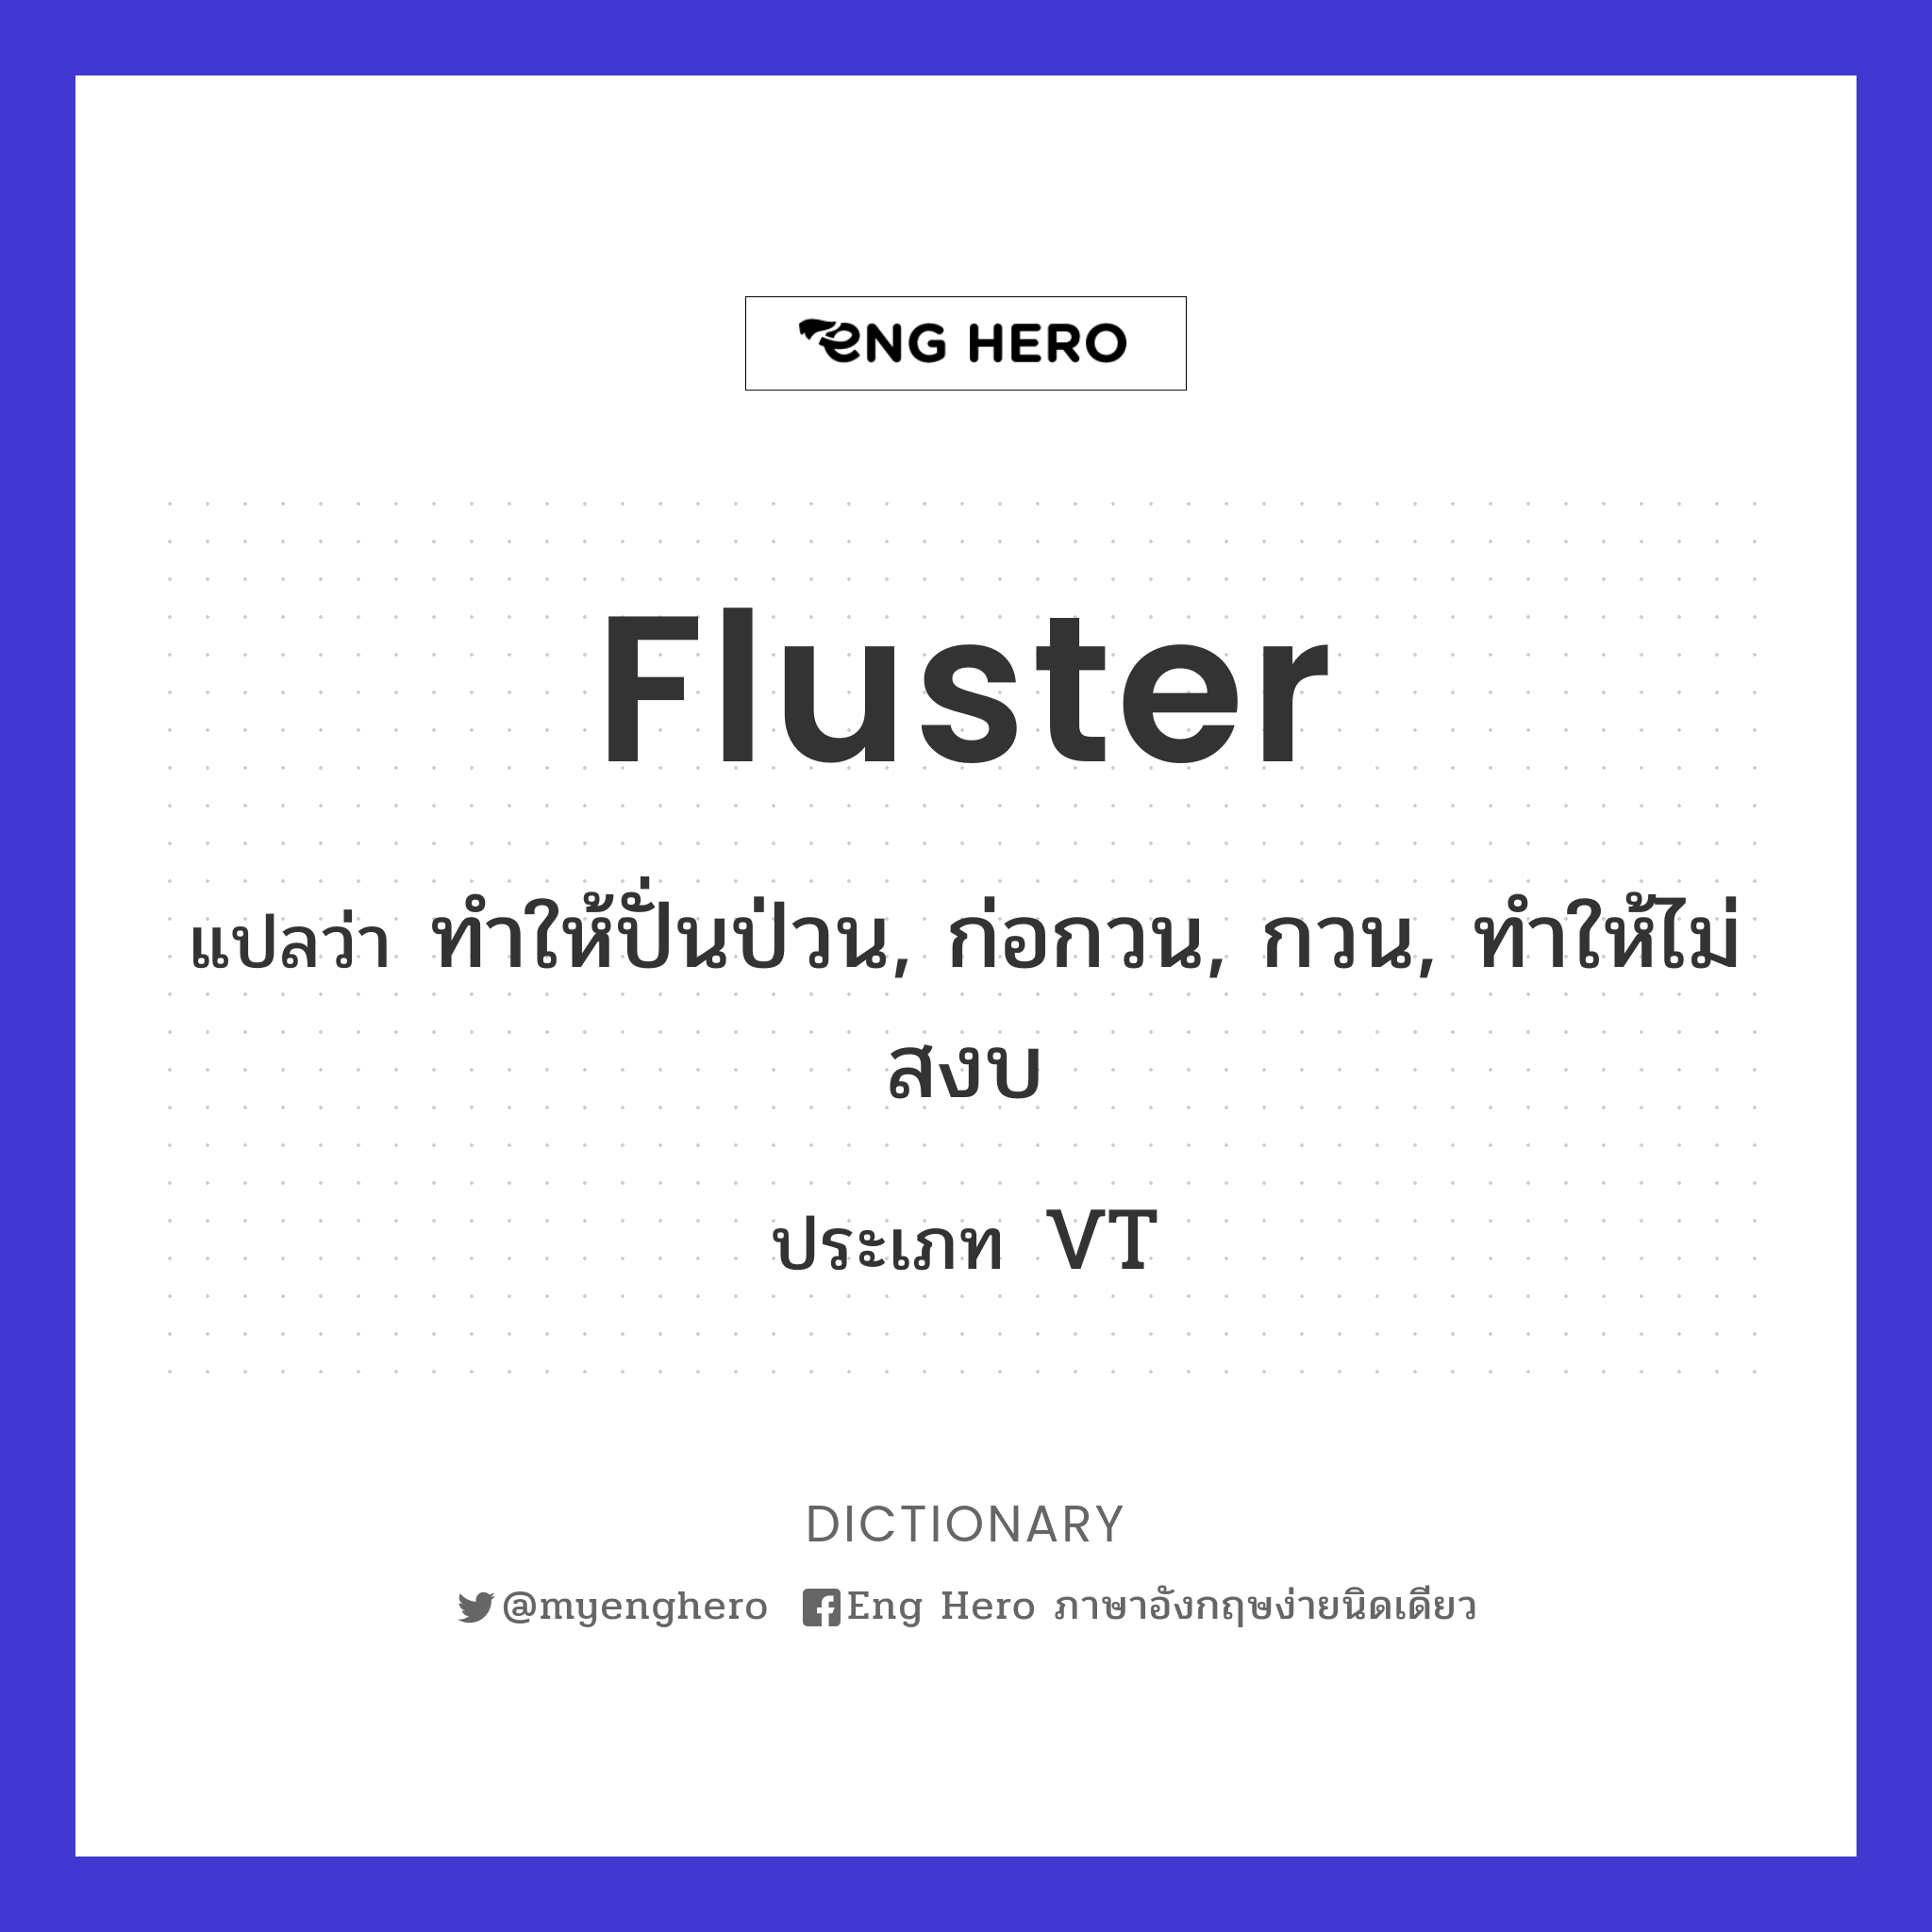 fluster